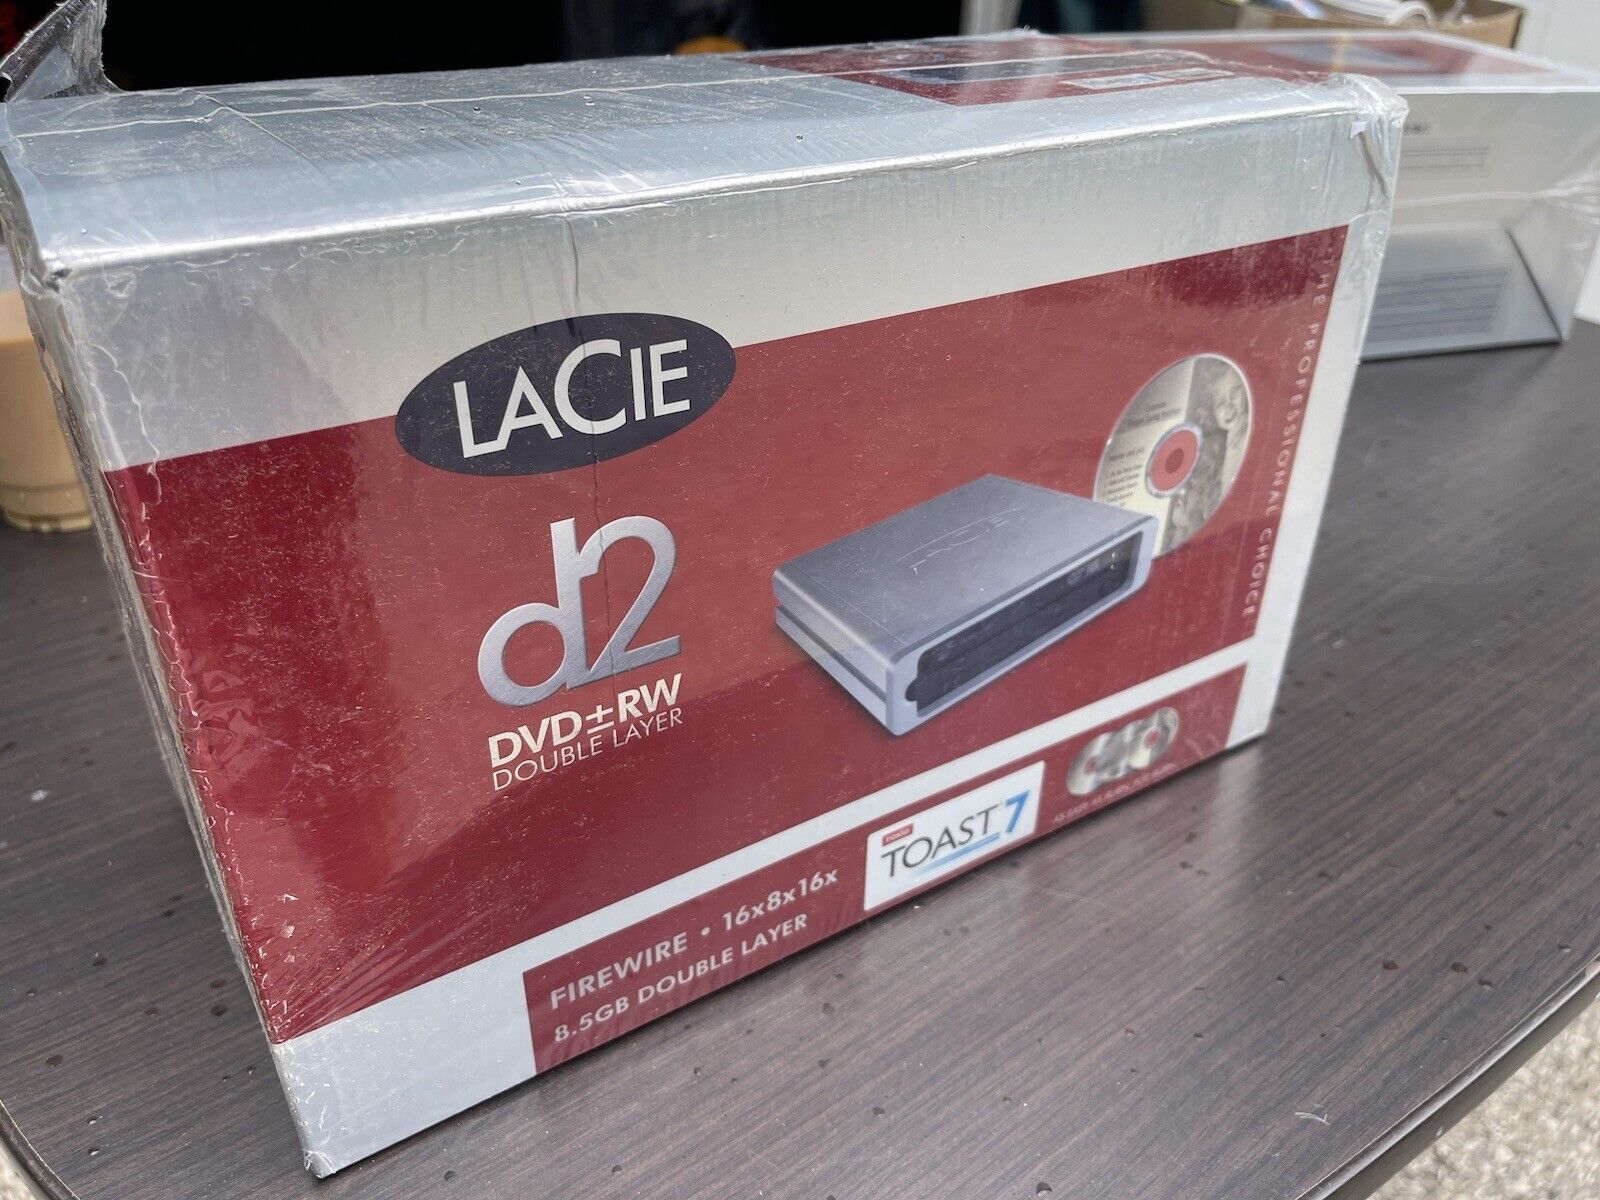 LaCie D2 DVD RW 8.5GB DOUBLE LAYER NOS New FireWire 16x8x16x Toast 7